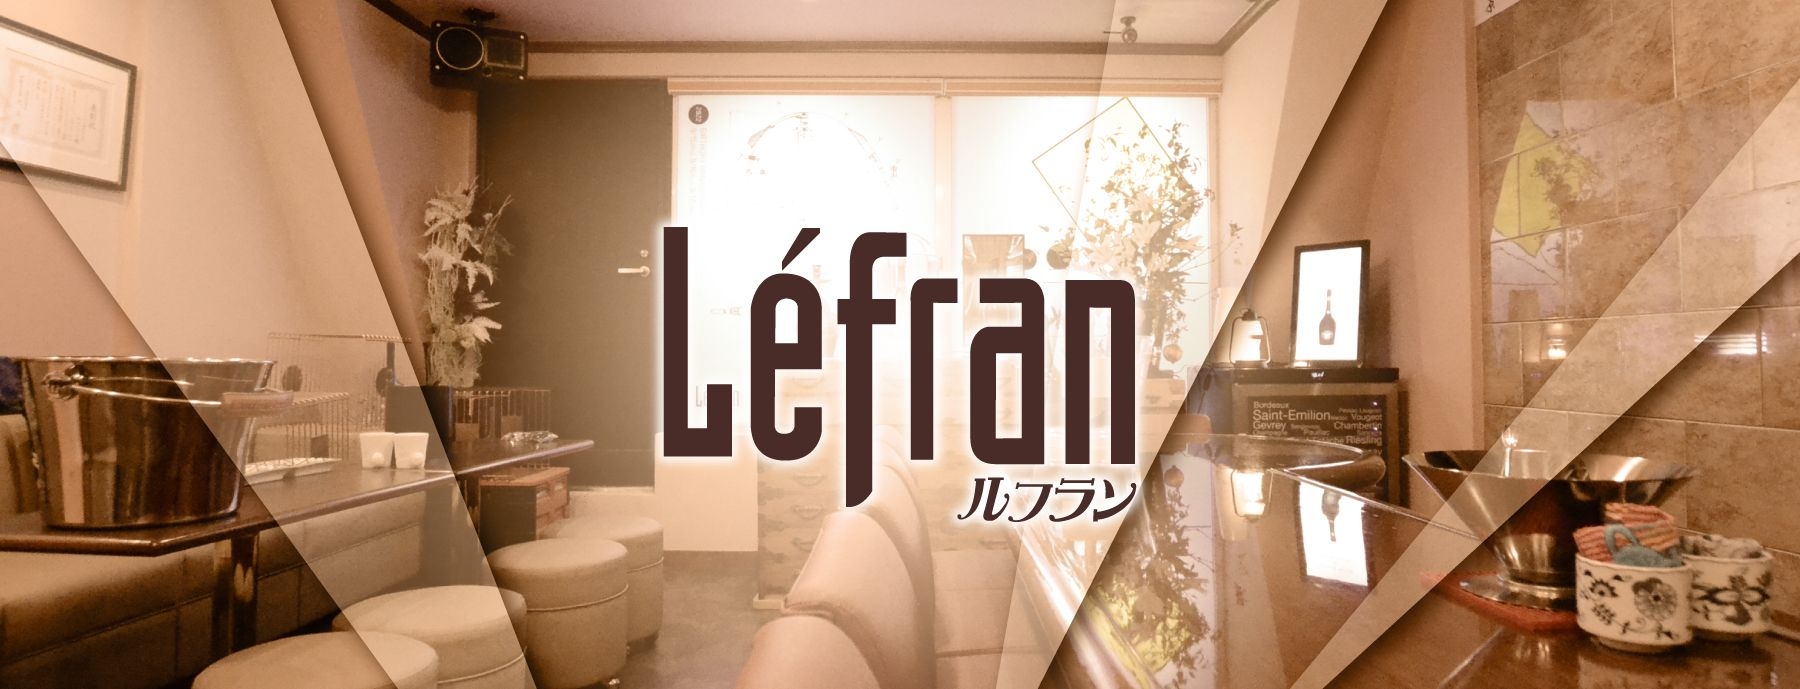 Lefran 〜ルフラン〜